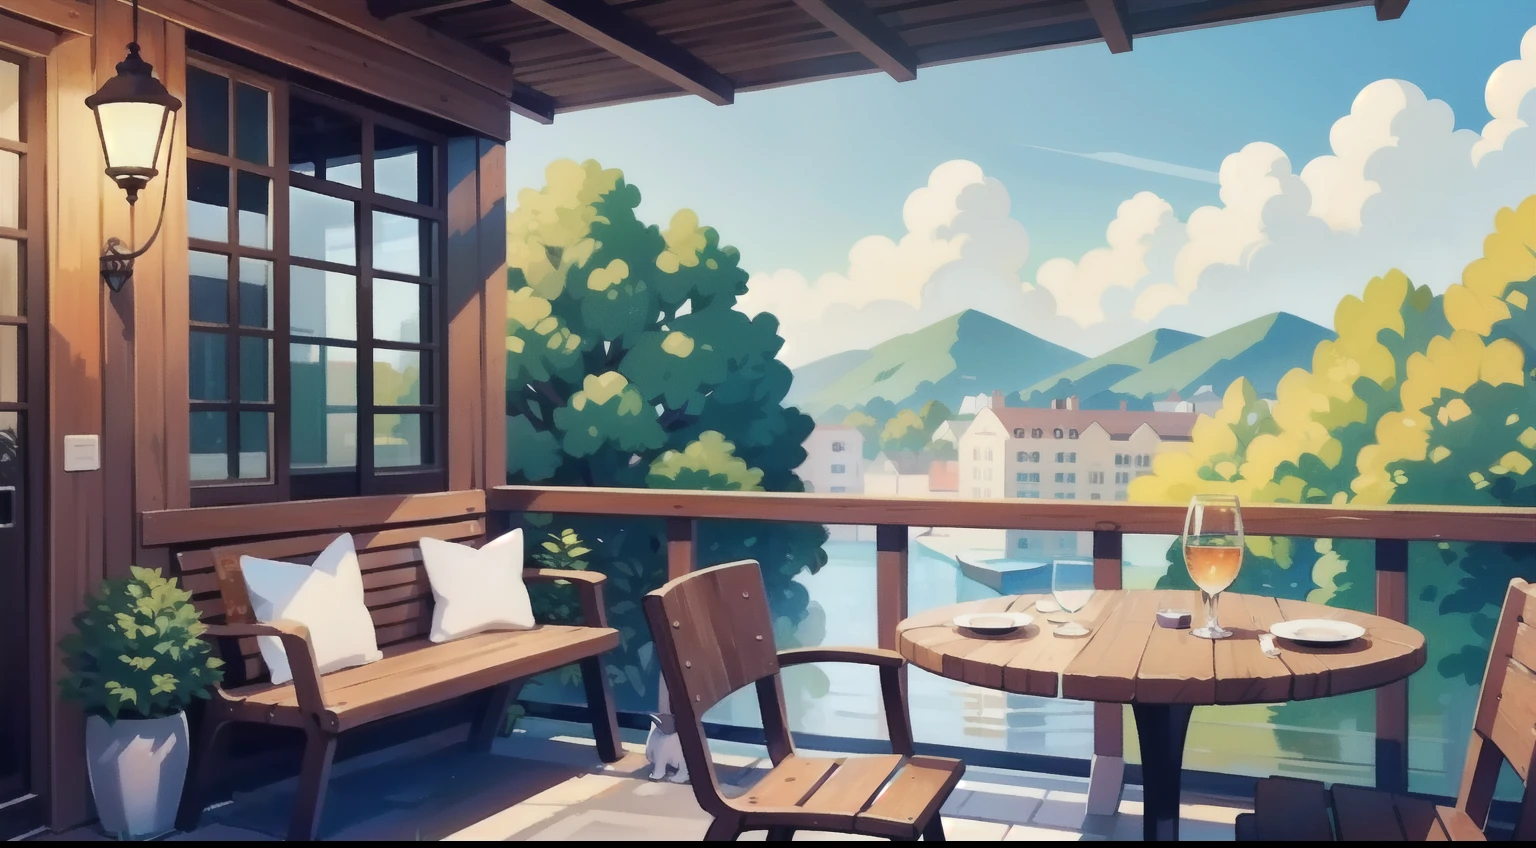 Linda pintura de paisagem、Assentos no terraço do café、céu azul、ultra-qualidade、mesa、cor natural、Cachorro marrom em uma cadeira、Cachorro preto